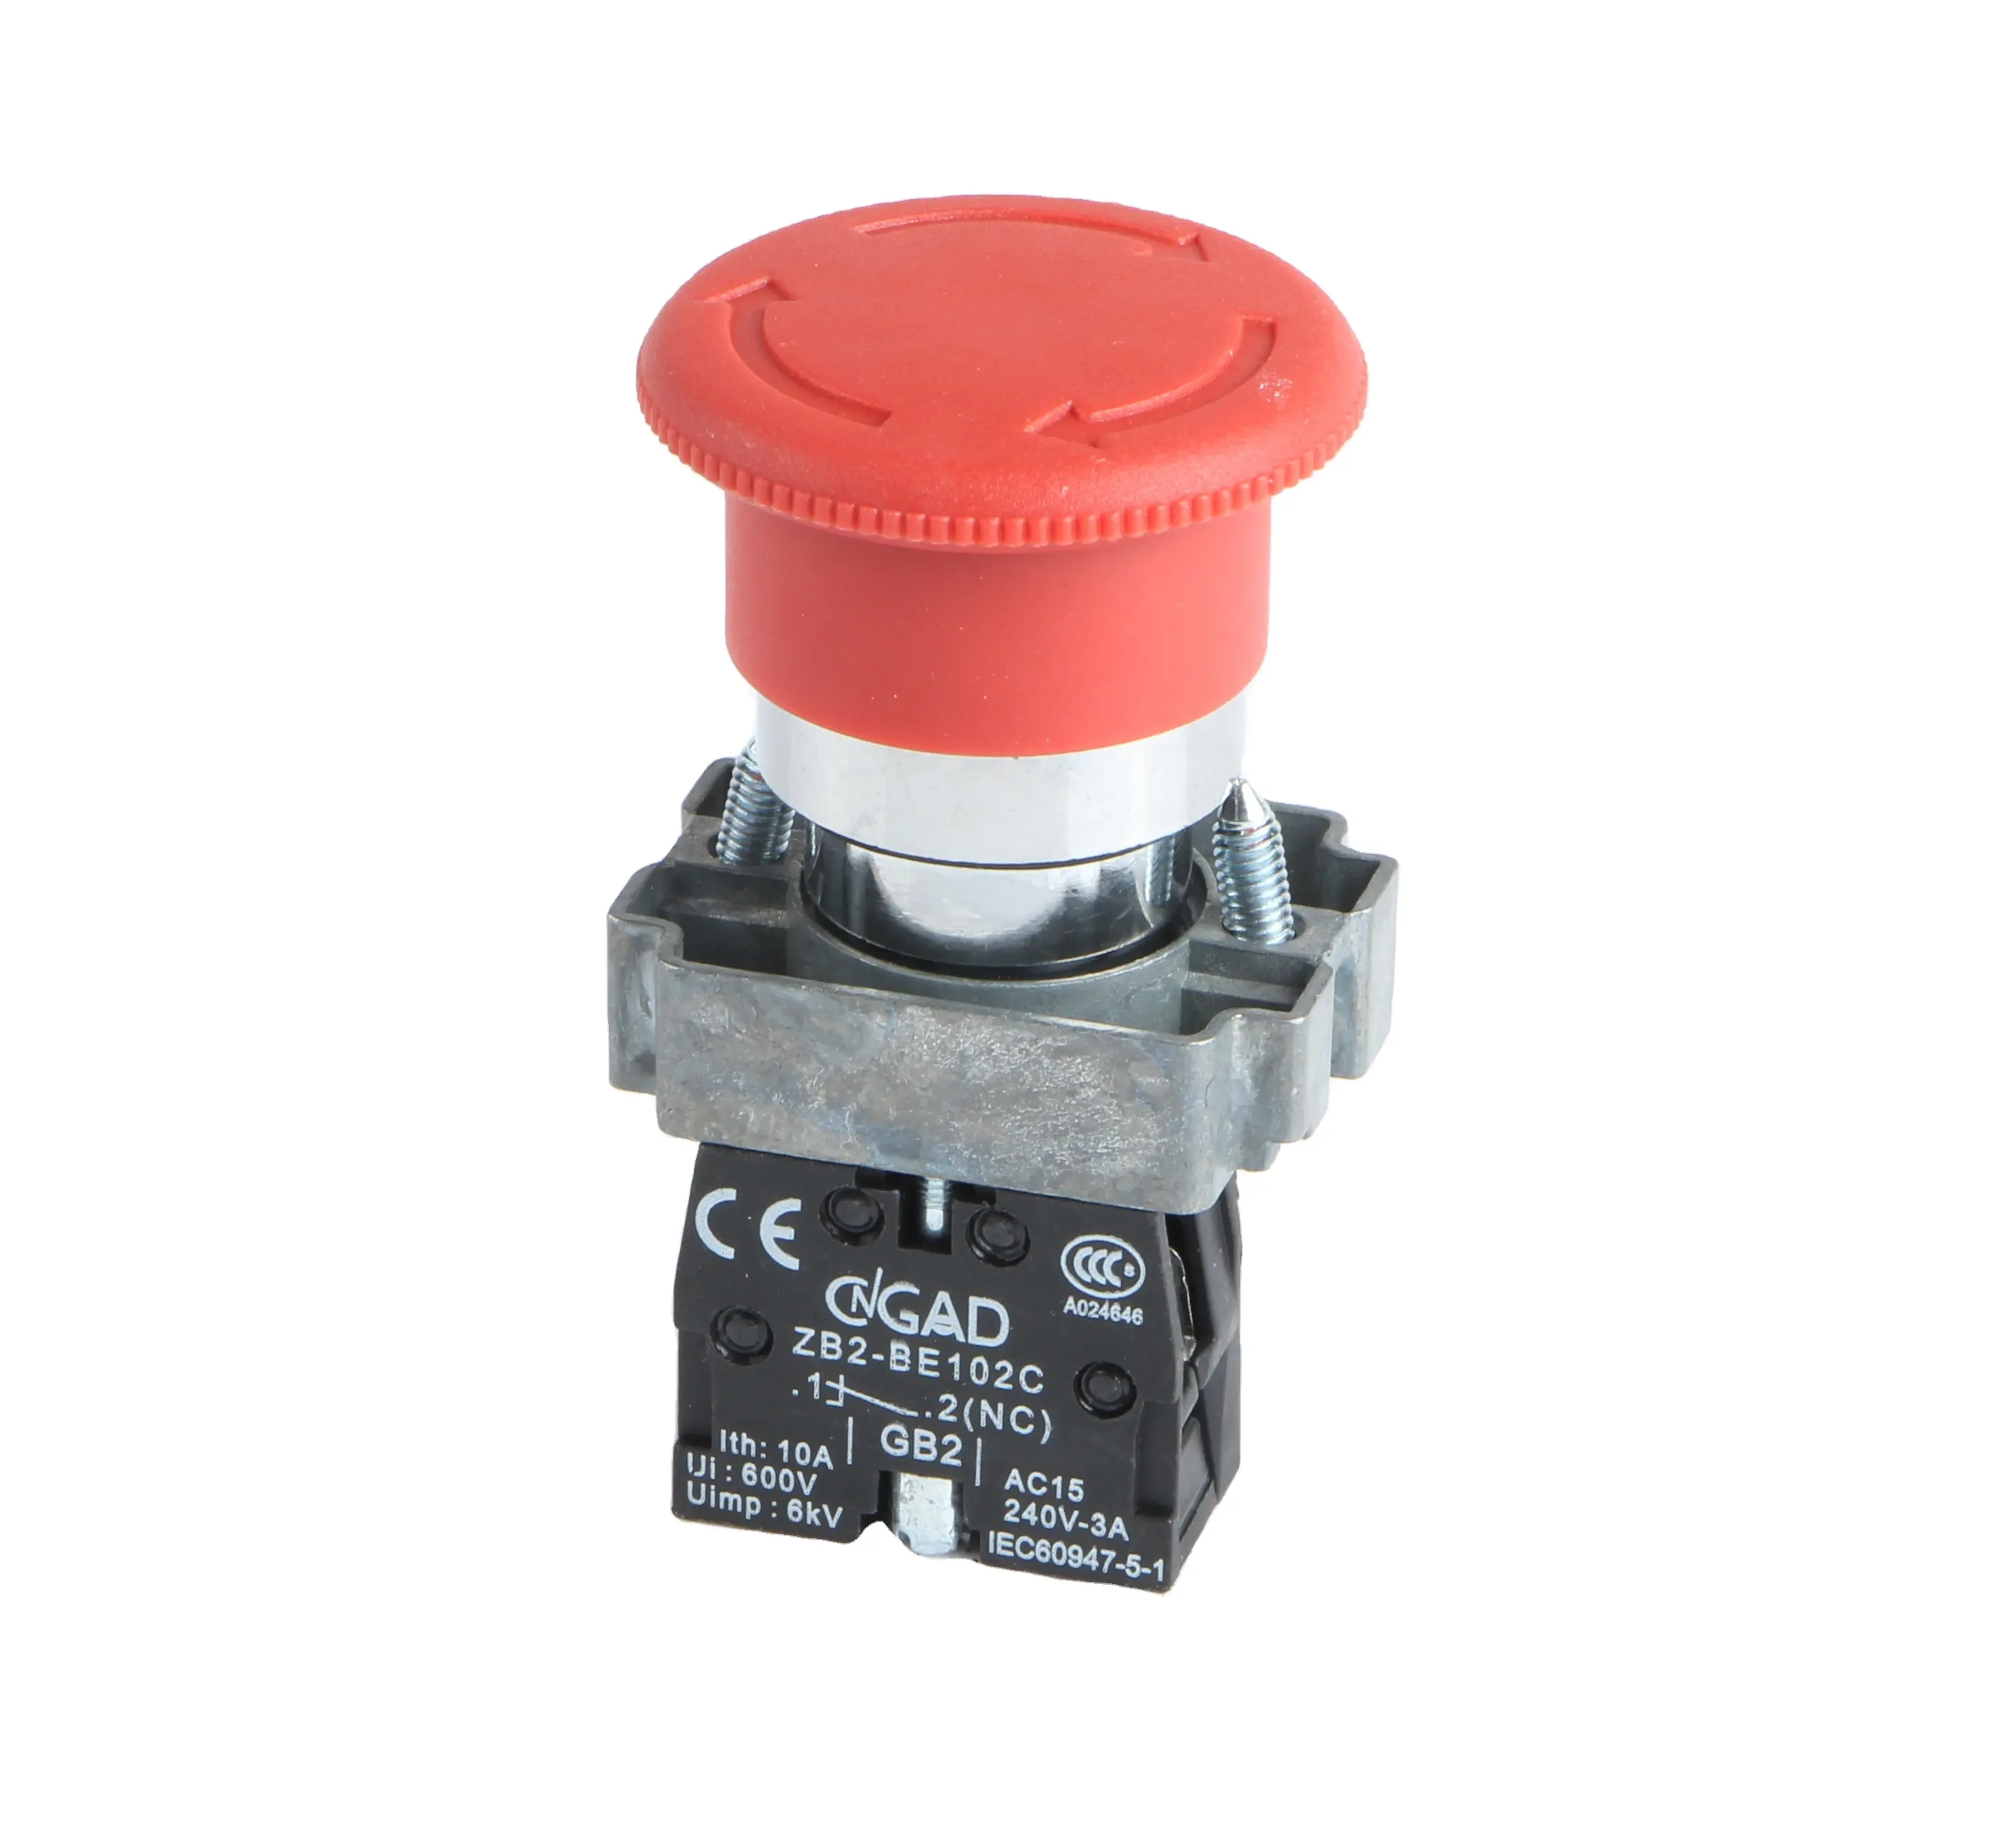 Fechamento de pressão de emergência, botão interruptor de pressão cngad 22mm de XB2-BS542